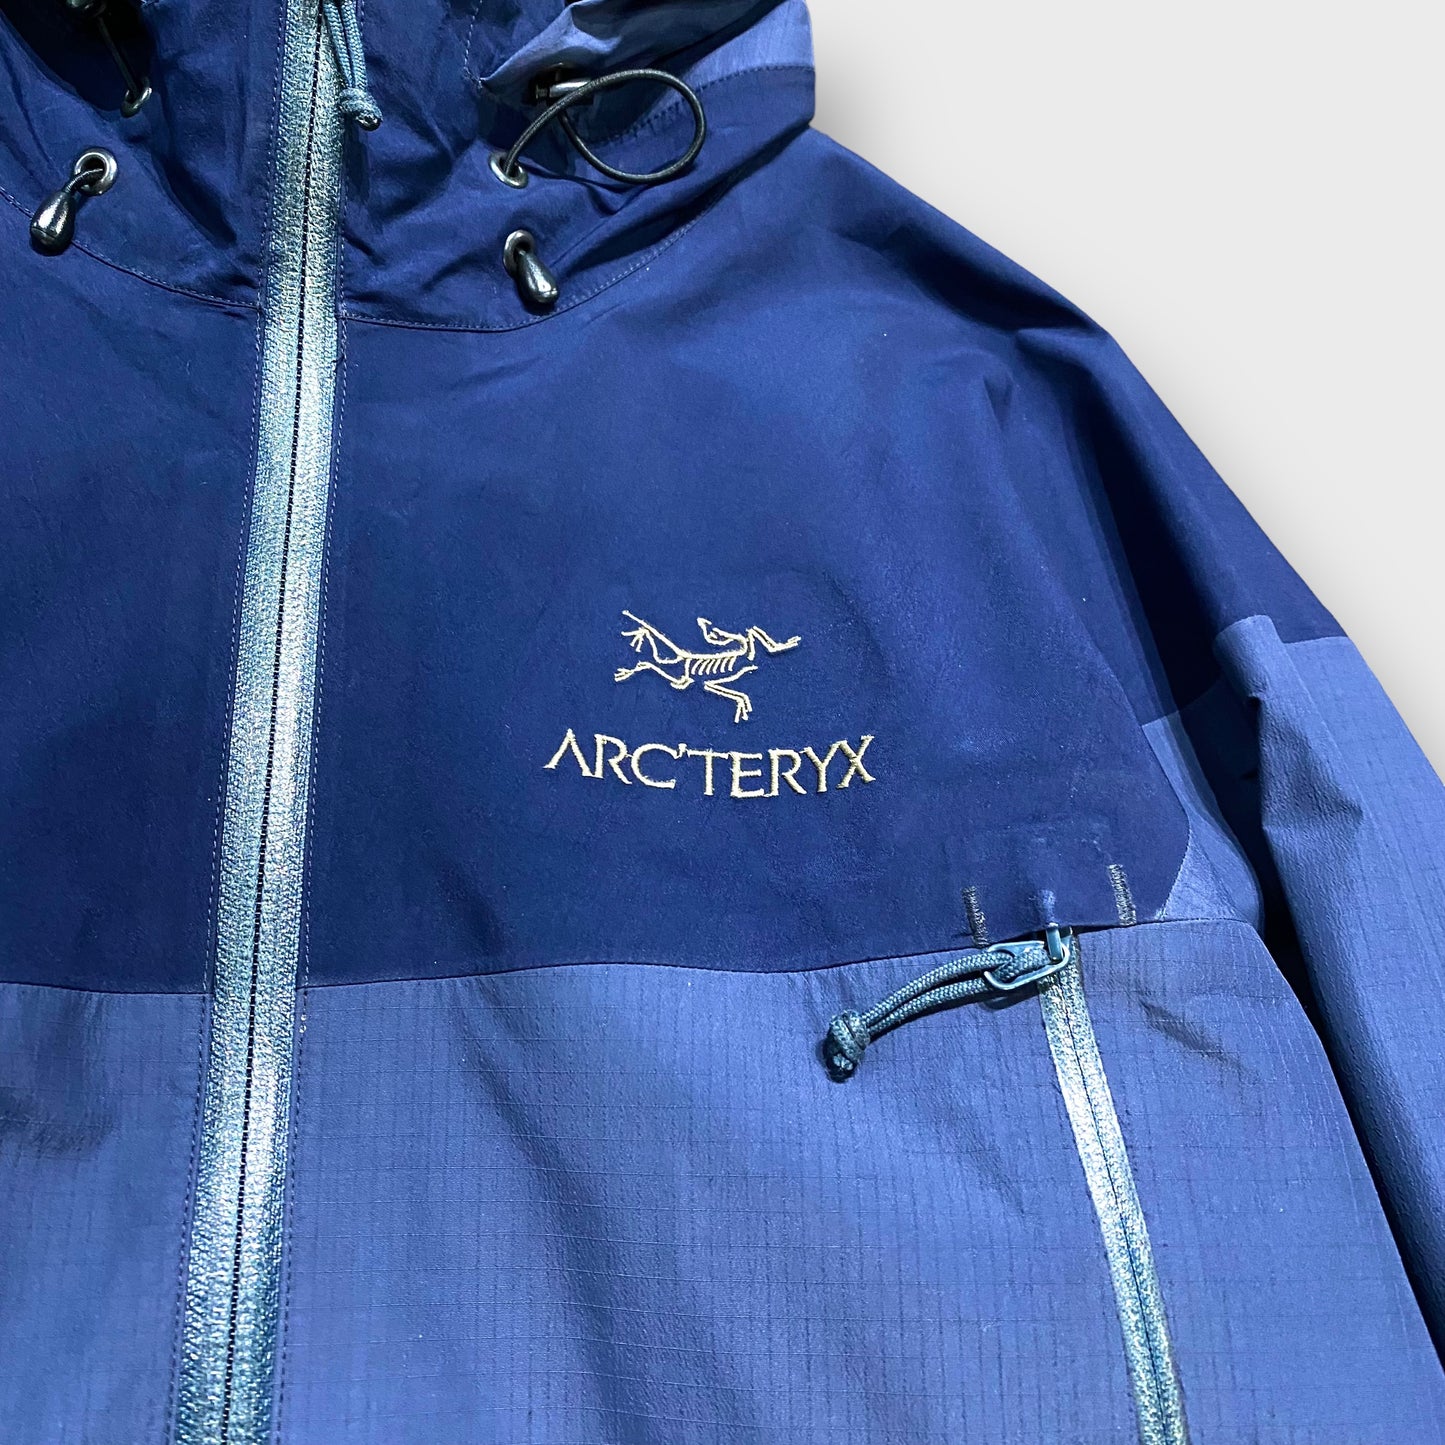 00's "Arc'teryx" Zeta SL jacket